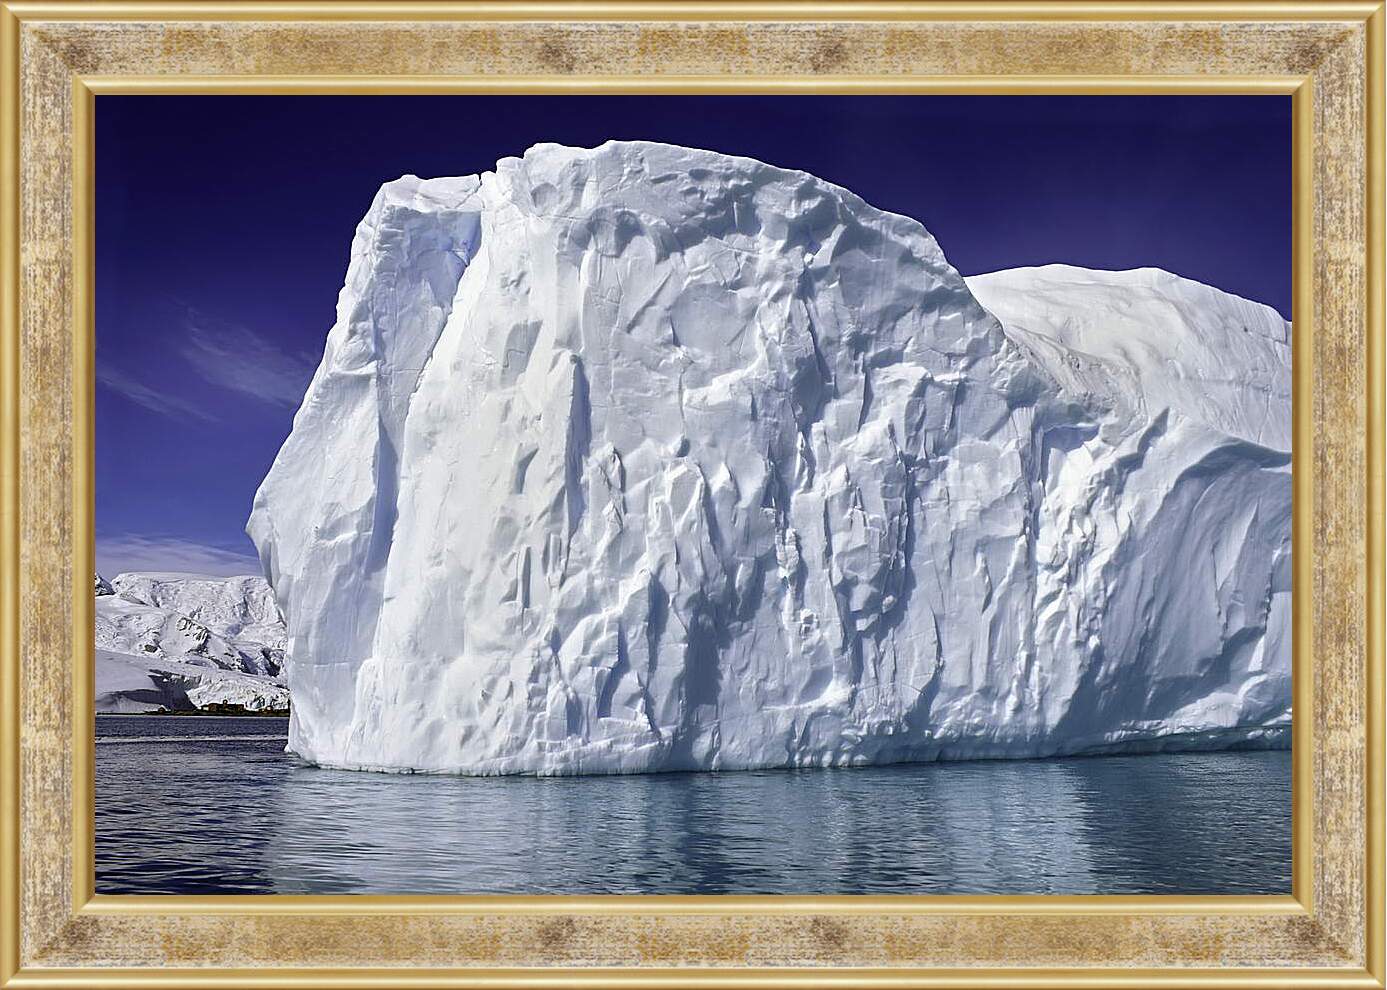 Картина в раме - Стена из айсберга
